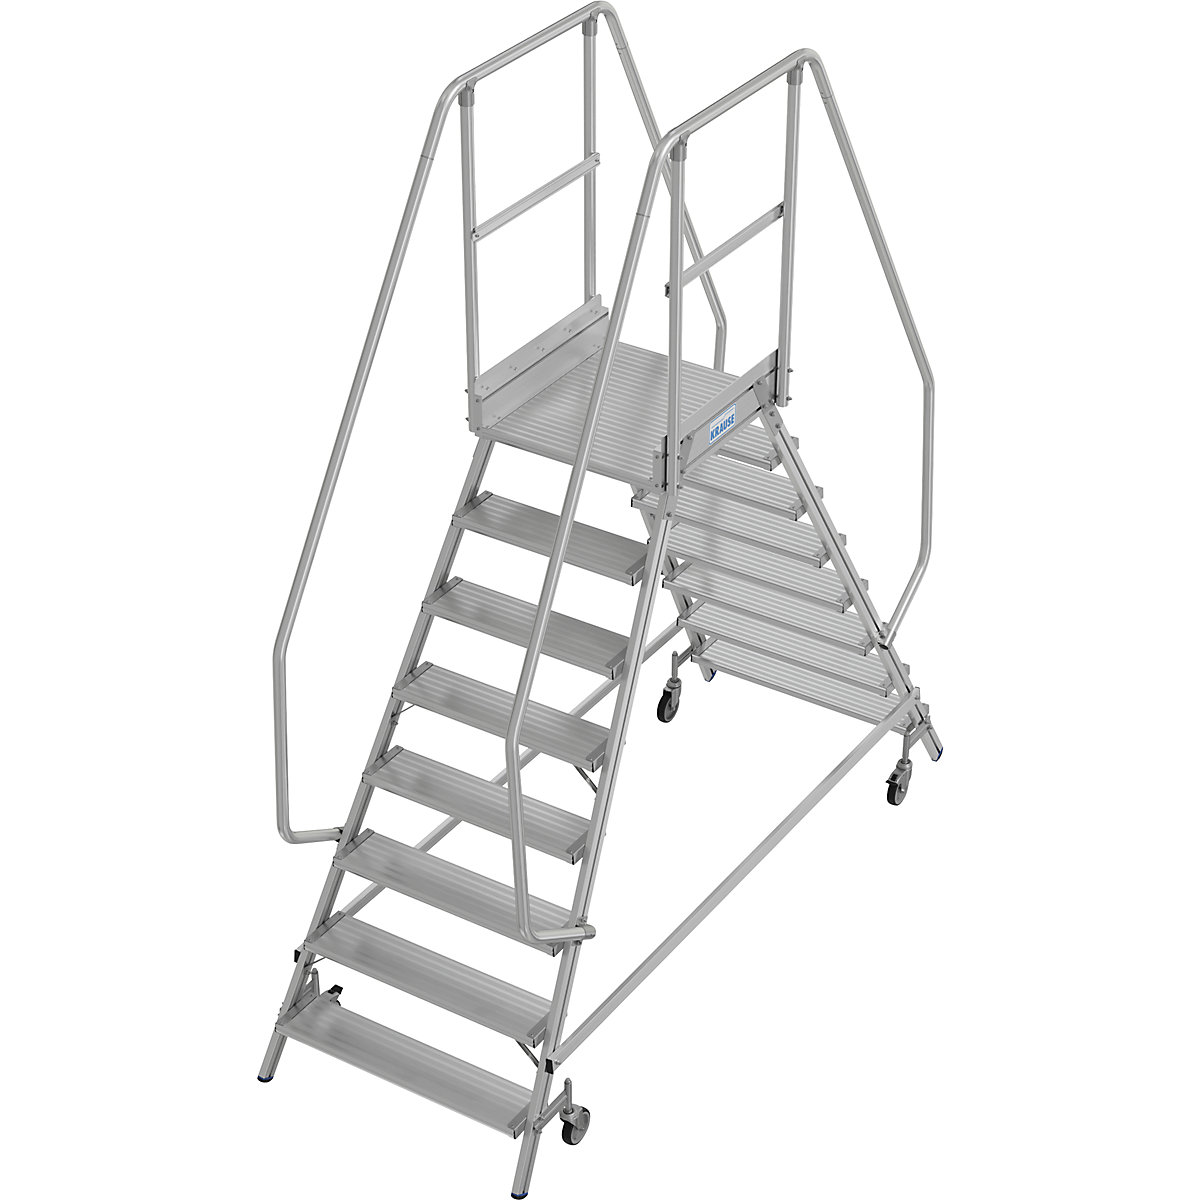 Escada de plataforma – KRAUSE, subida de dois lados, proteção para os pés, 2 x 8 degraus-13